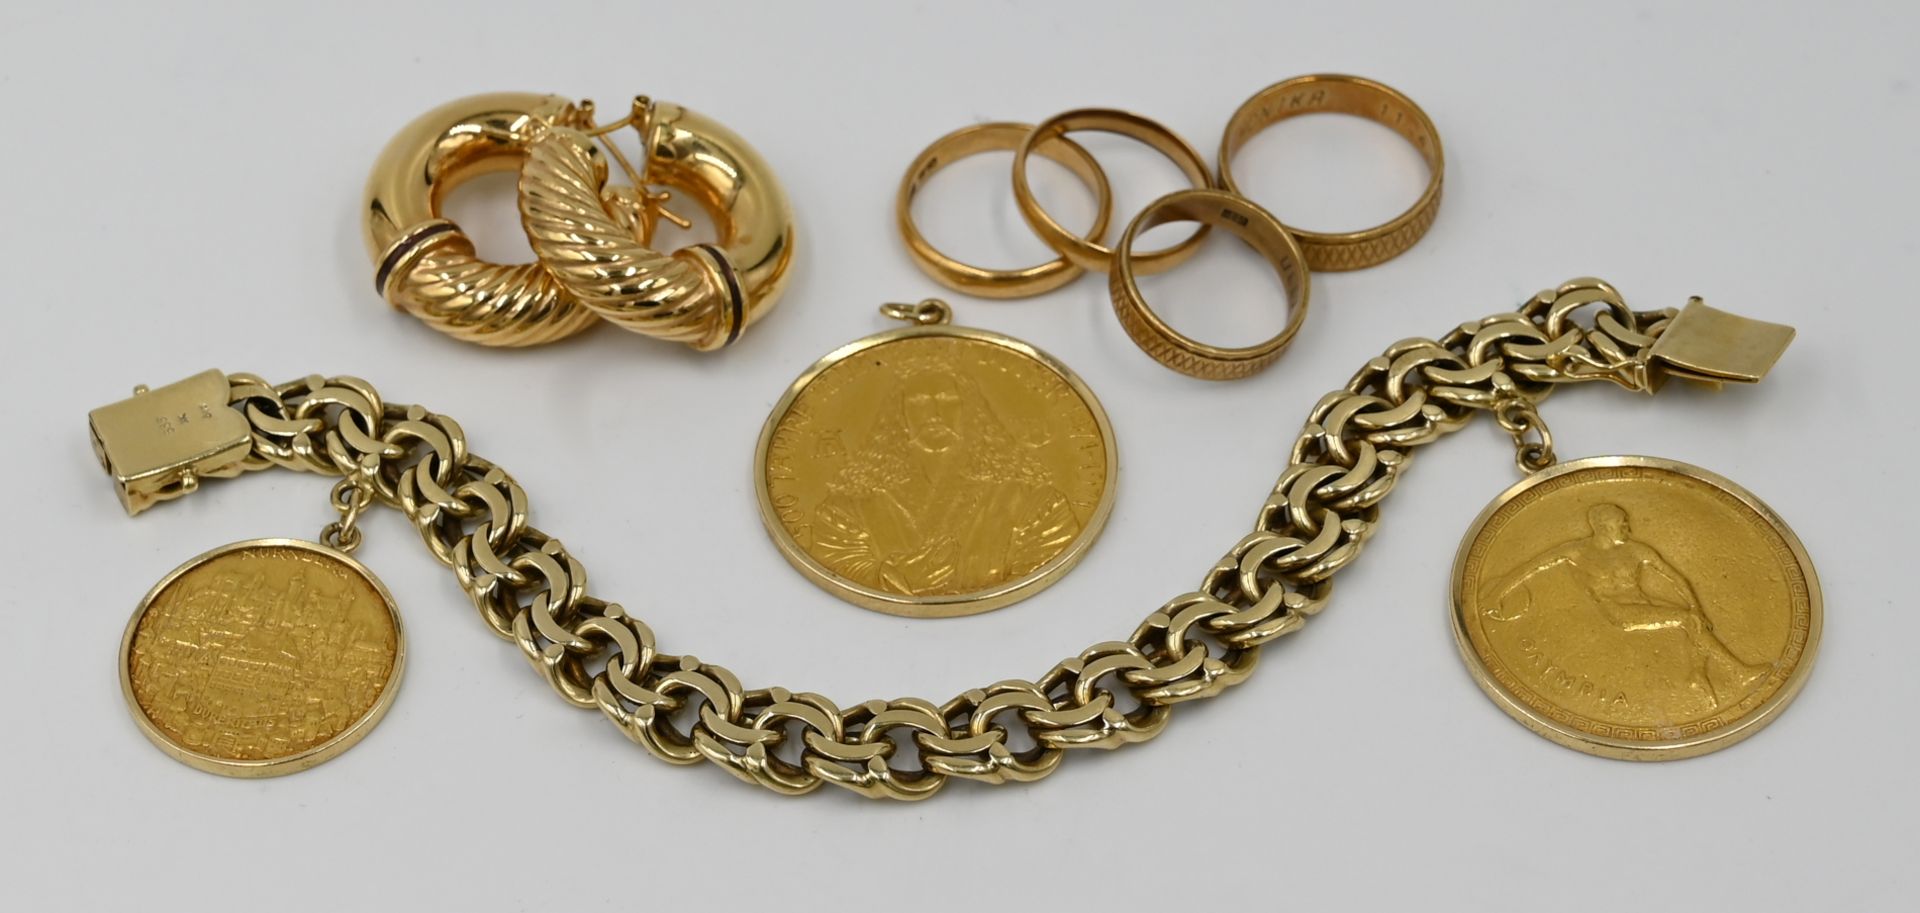 2 Eheringe je GG 18ct. sowie 5 Schmuckteile je GG 14ct., z.T. mit gefassten Goldmünzen z.B. "Albrech